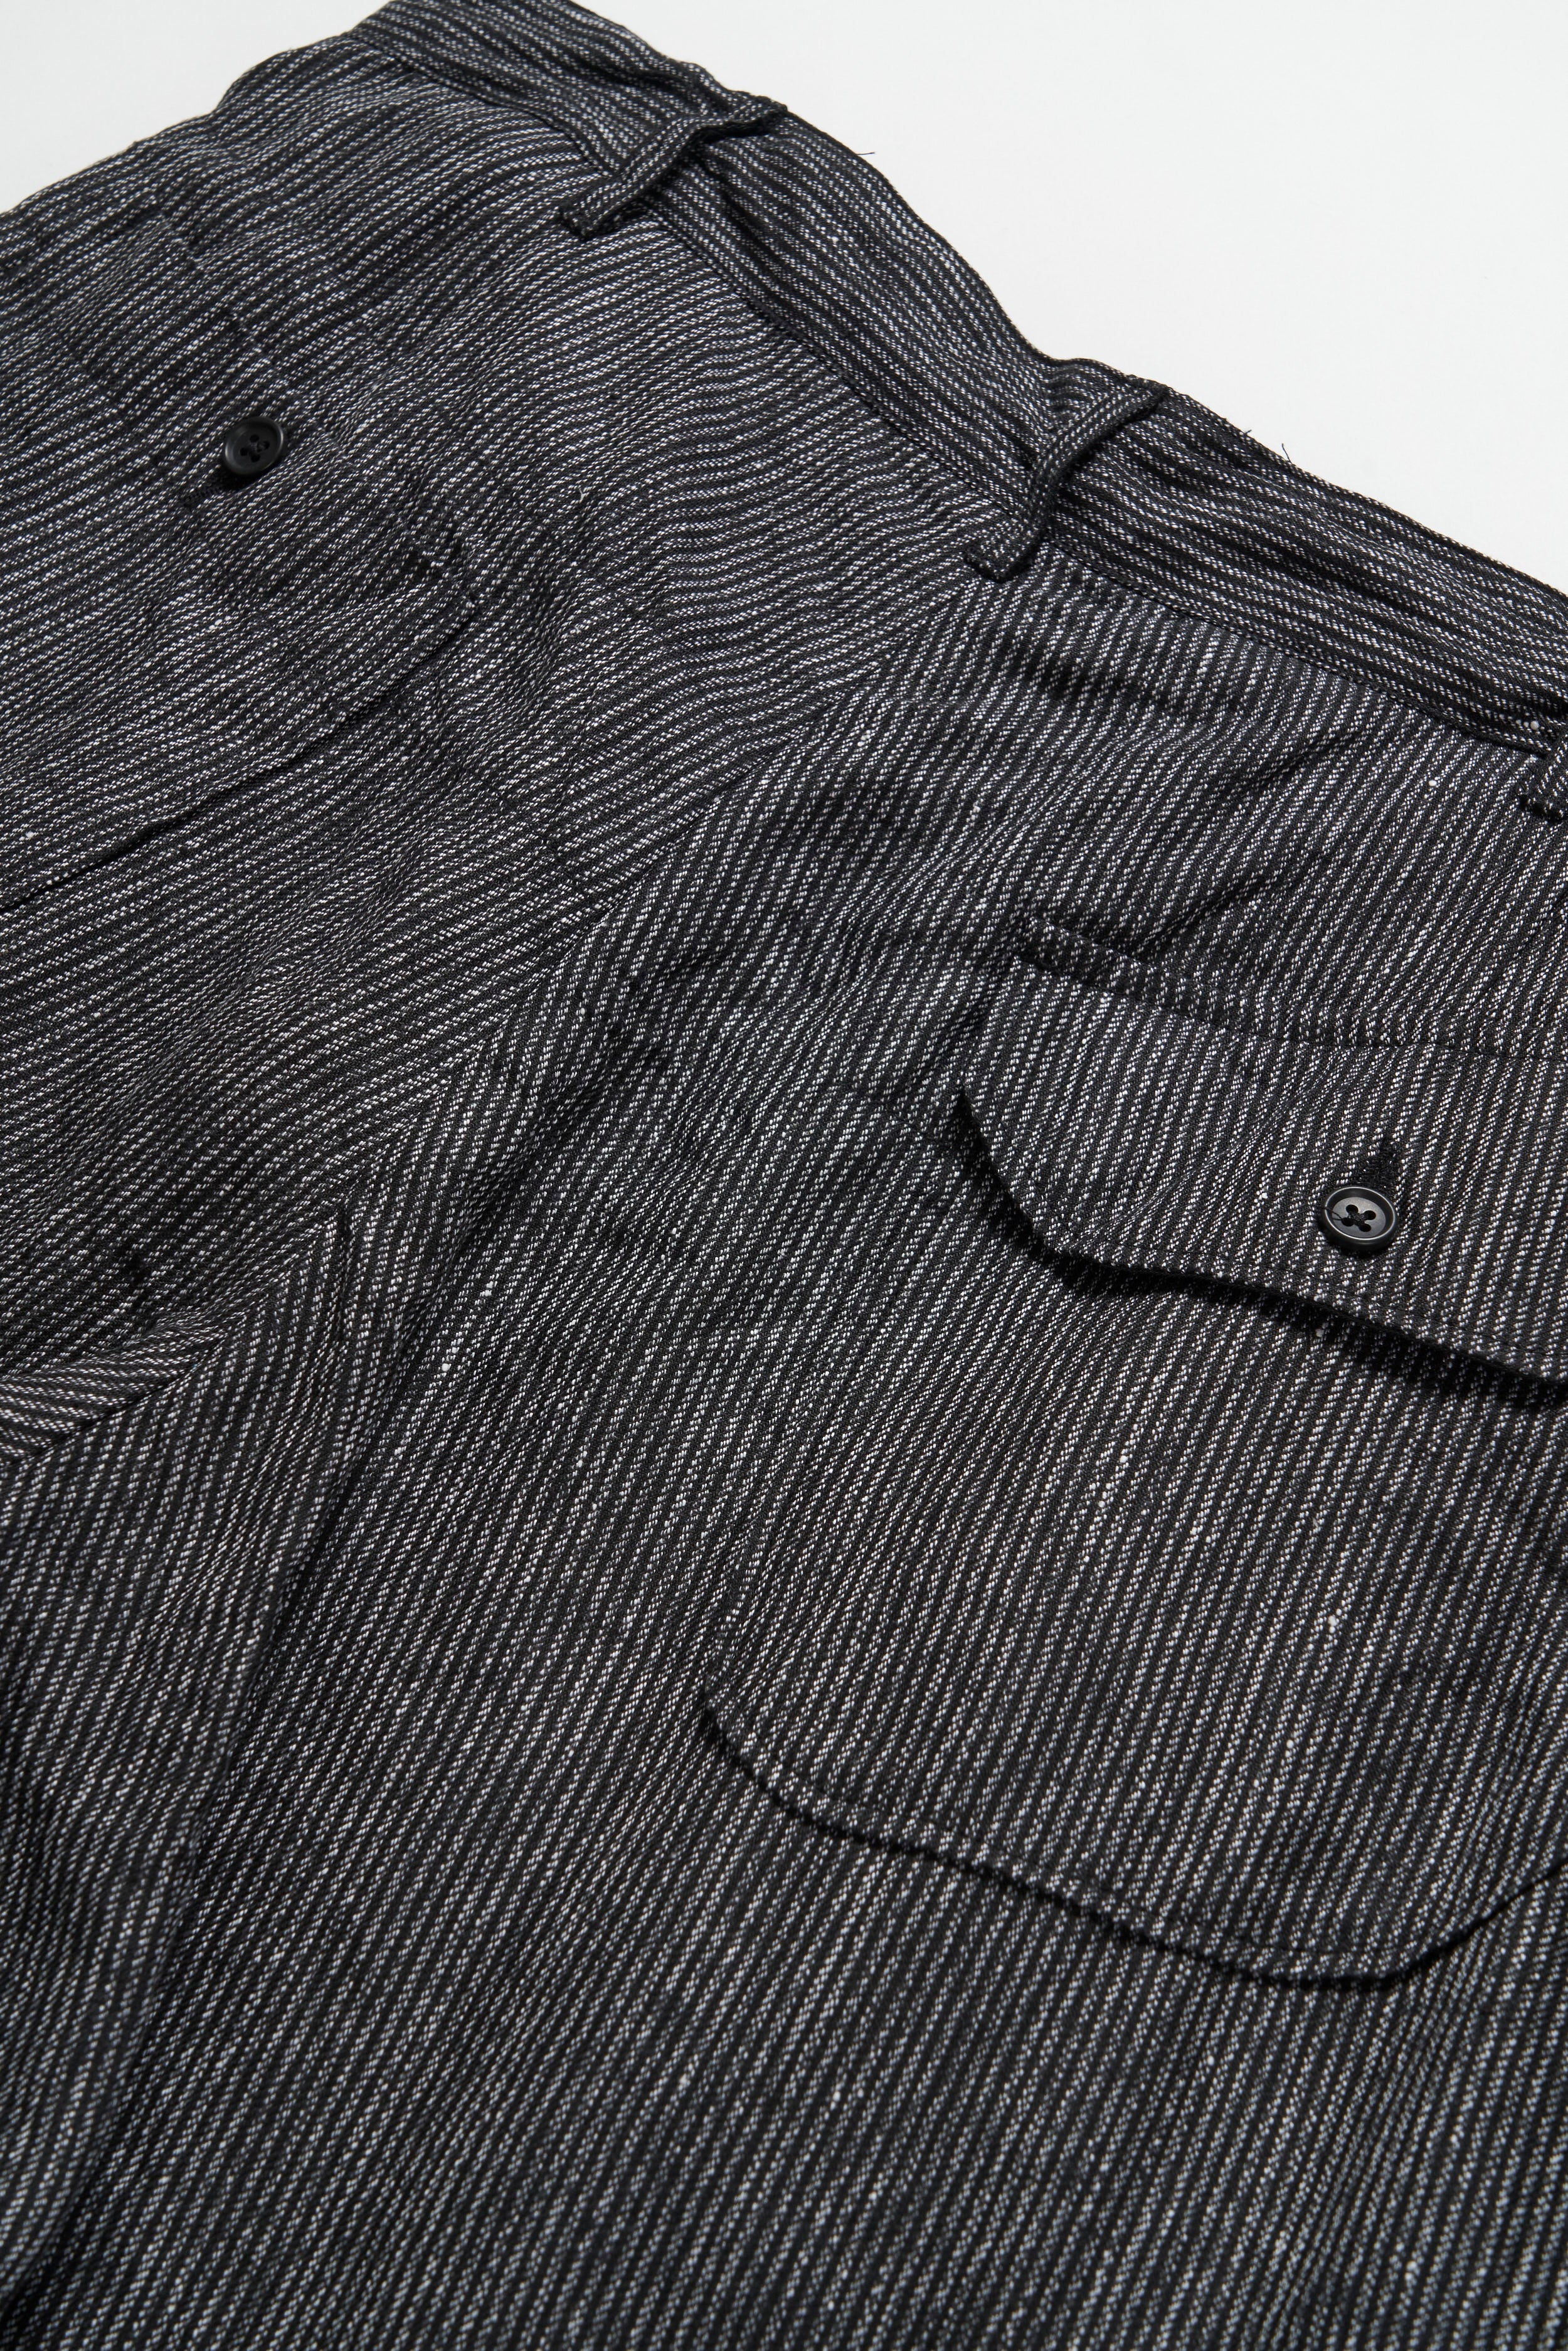 Carlyle Pant - Black / Grey Linen Stripe